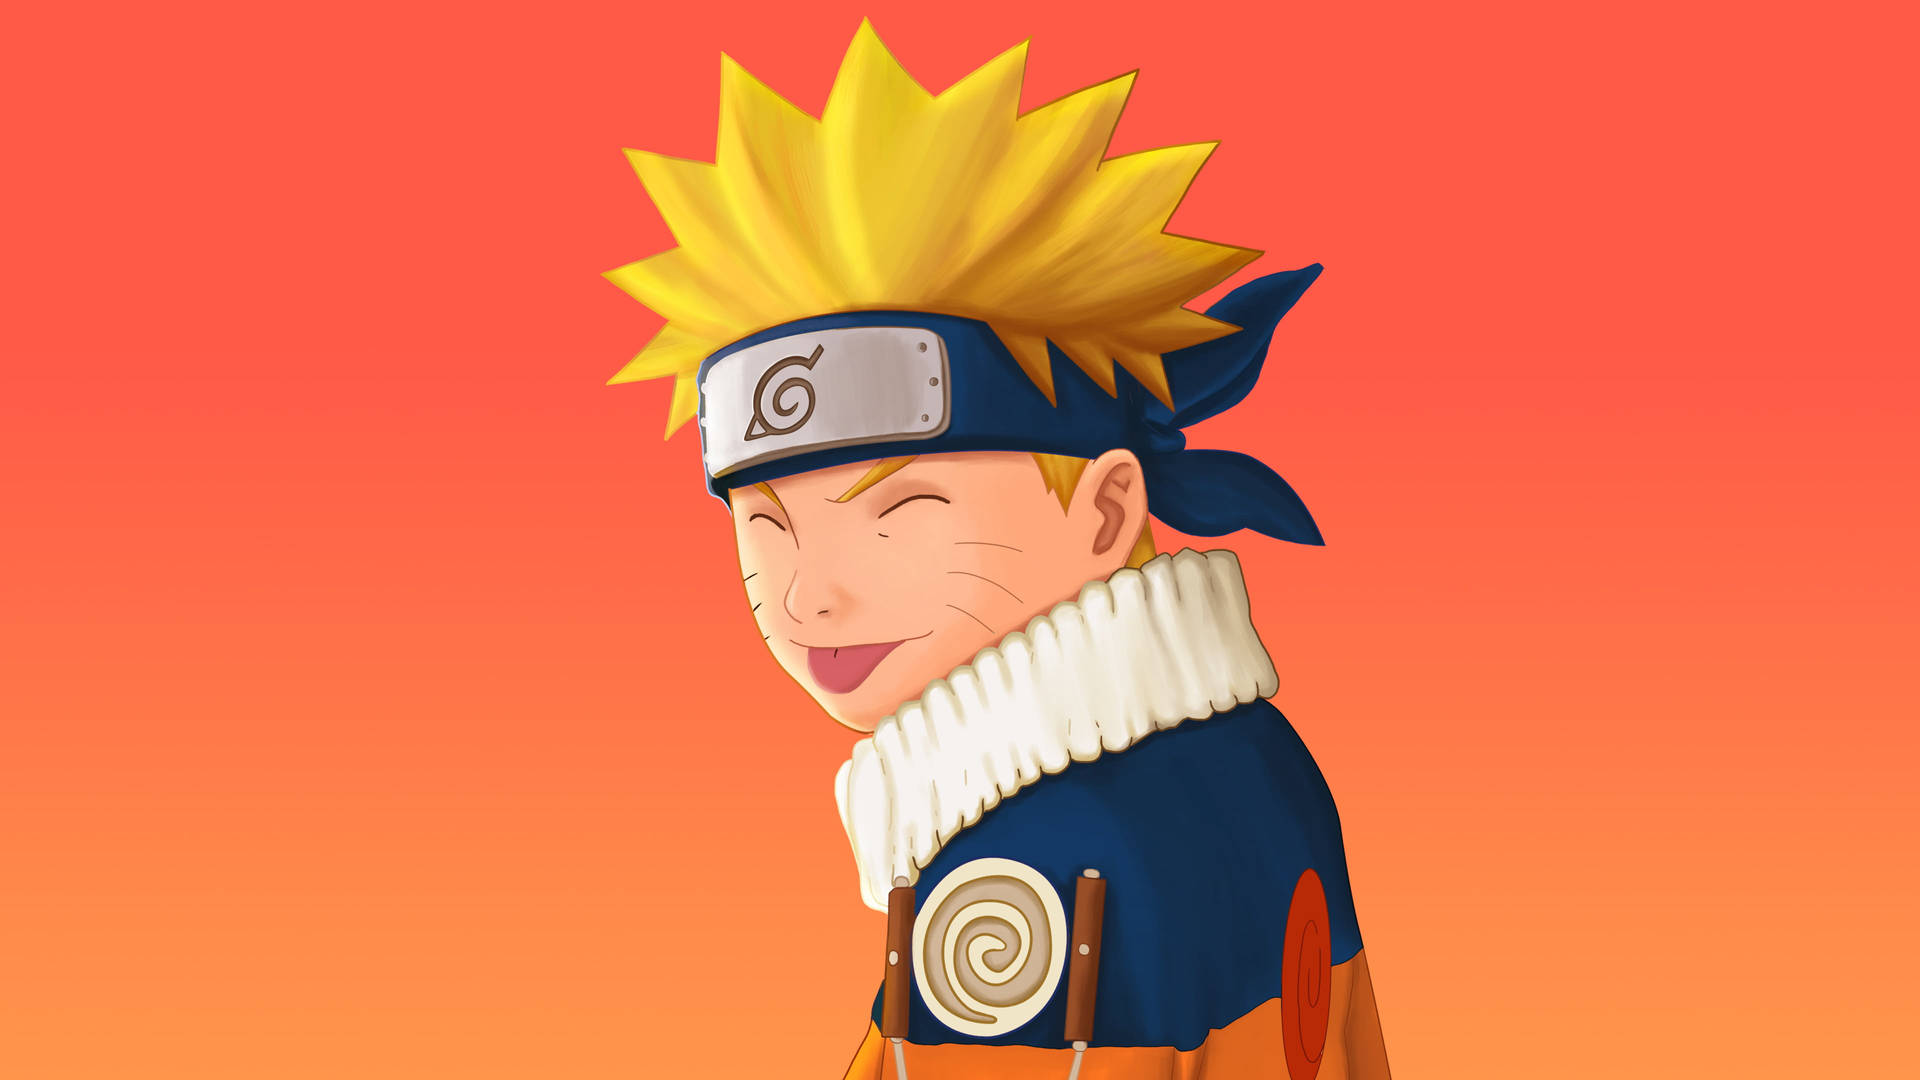 Free Naruto Shippuden Wallpaper Downloads, [600+] Naruto Shippuden  Wallpapers for FREE 